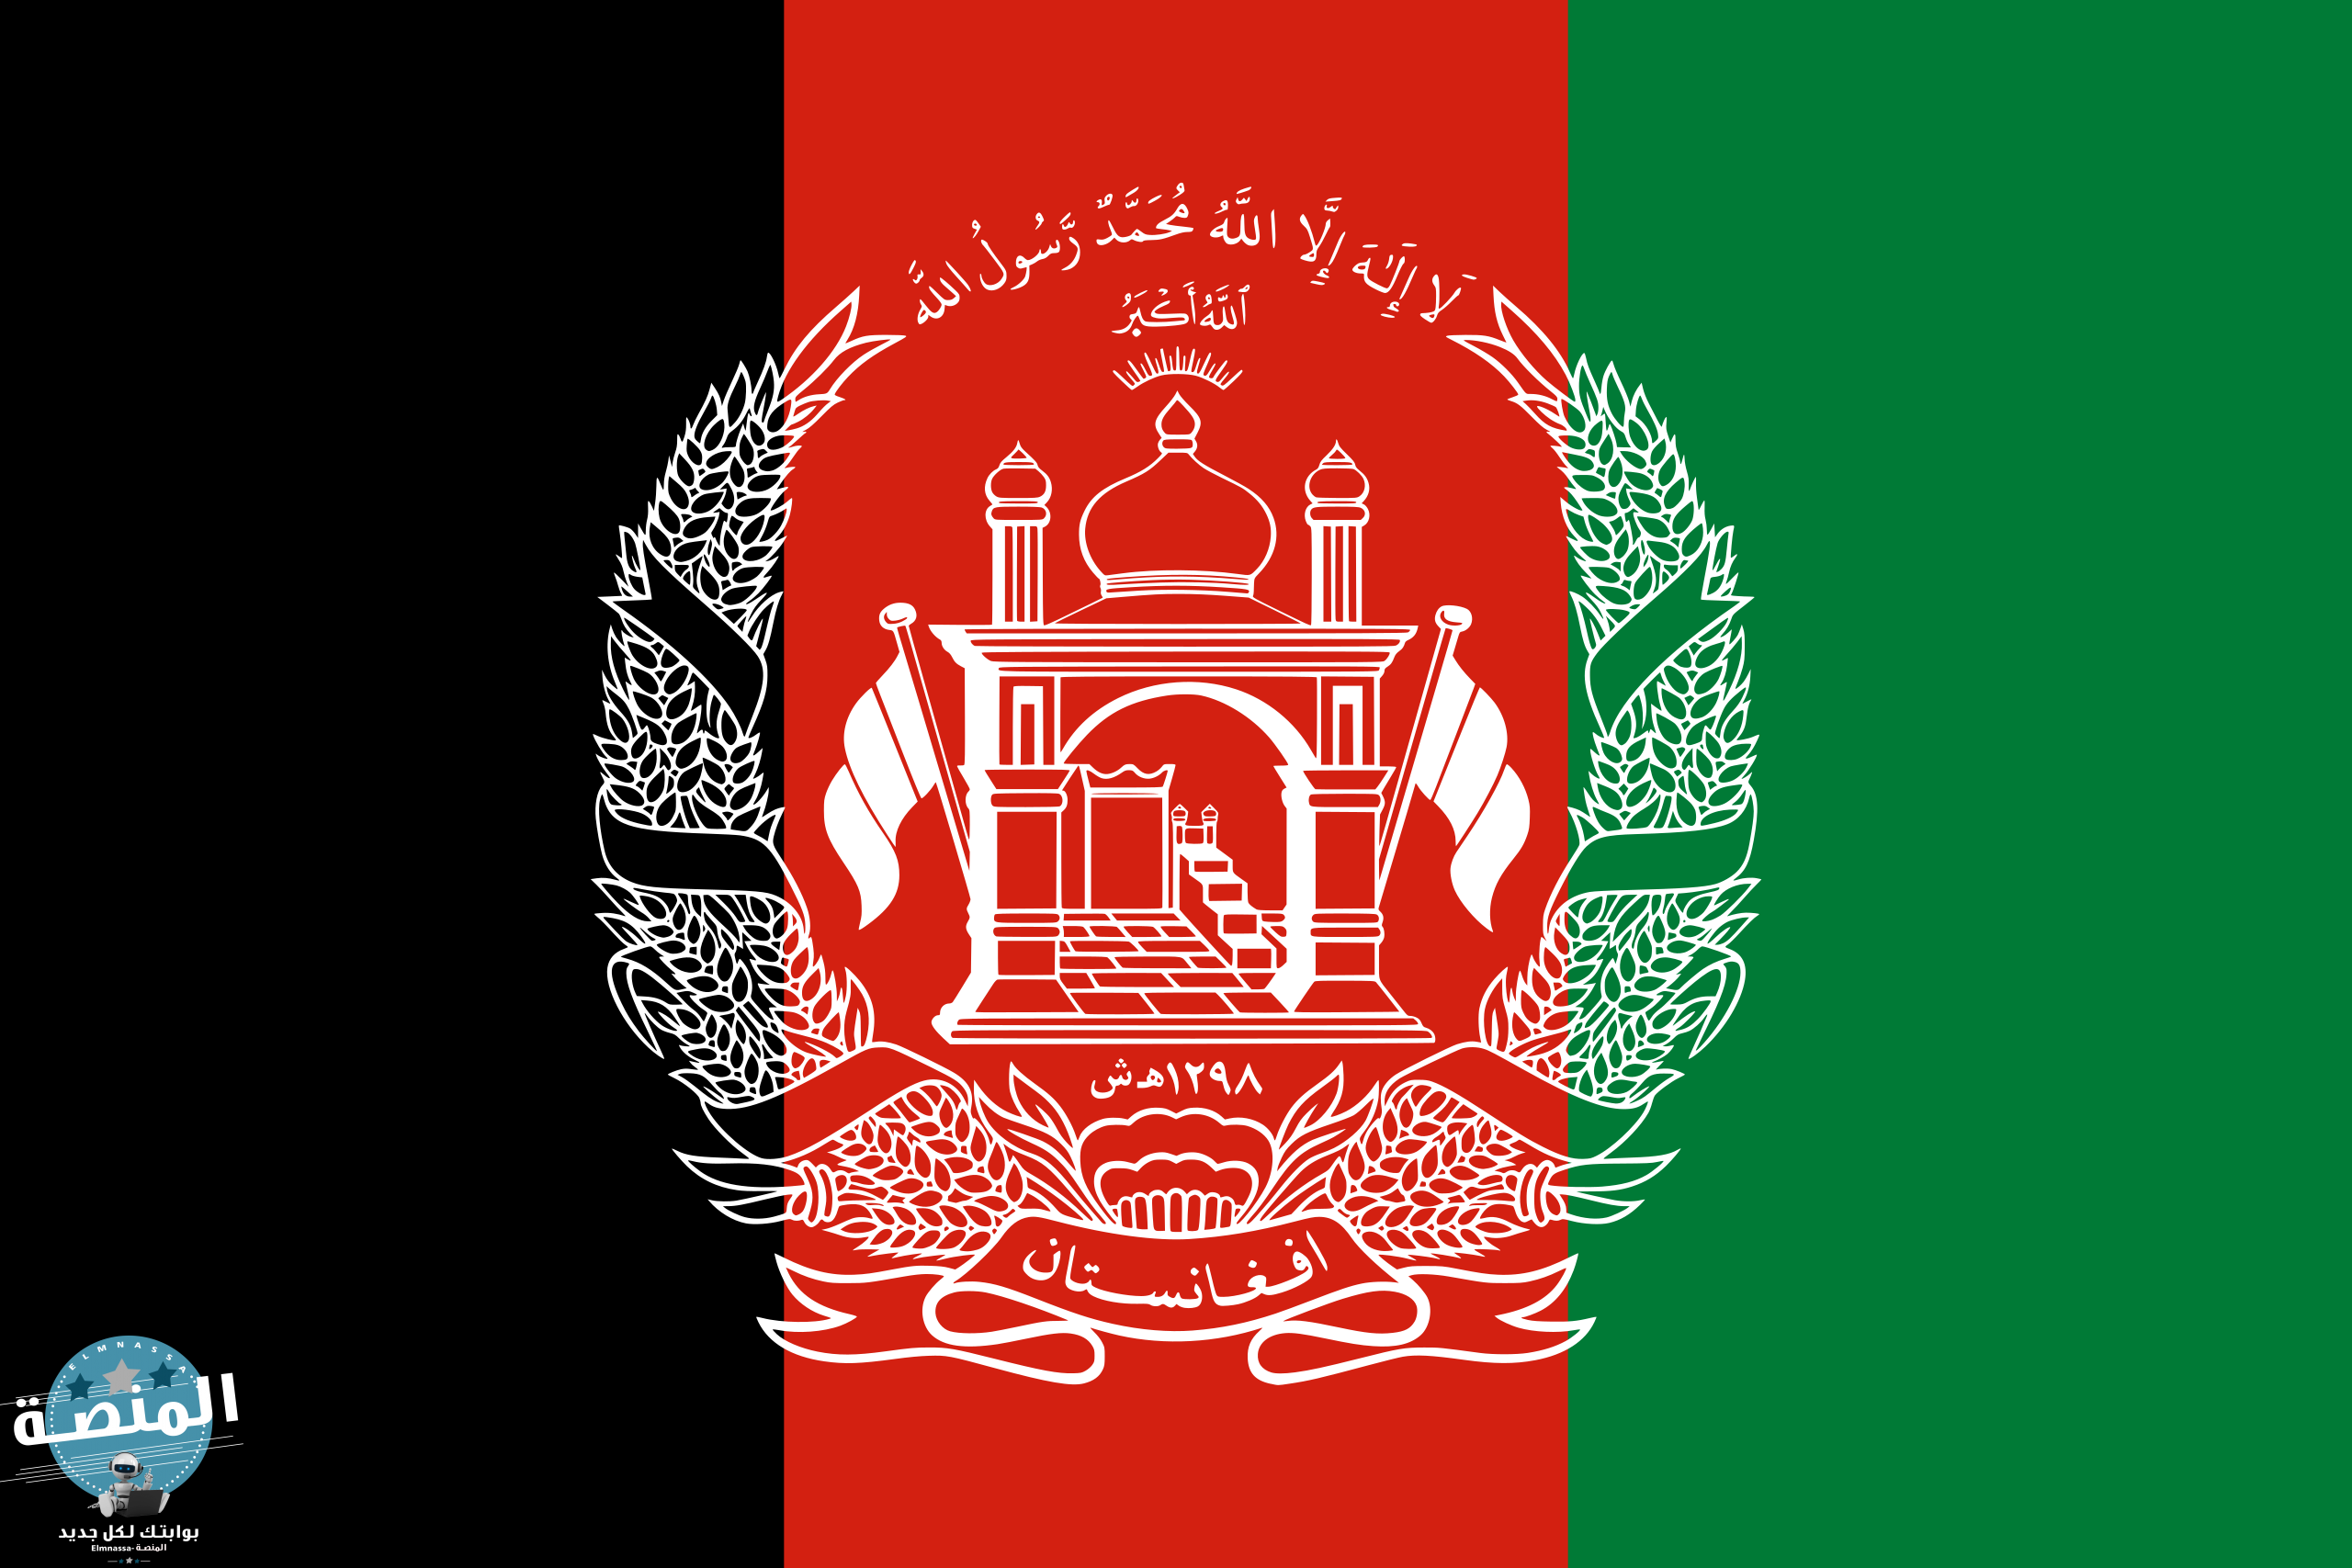 تاريخ أفغانستان و معلومات عن الدولة الأفغانستانية